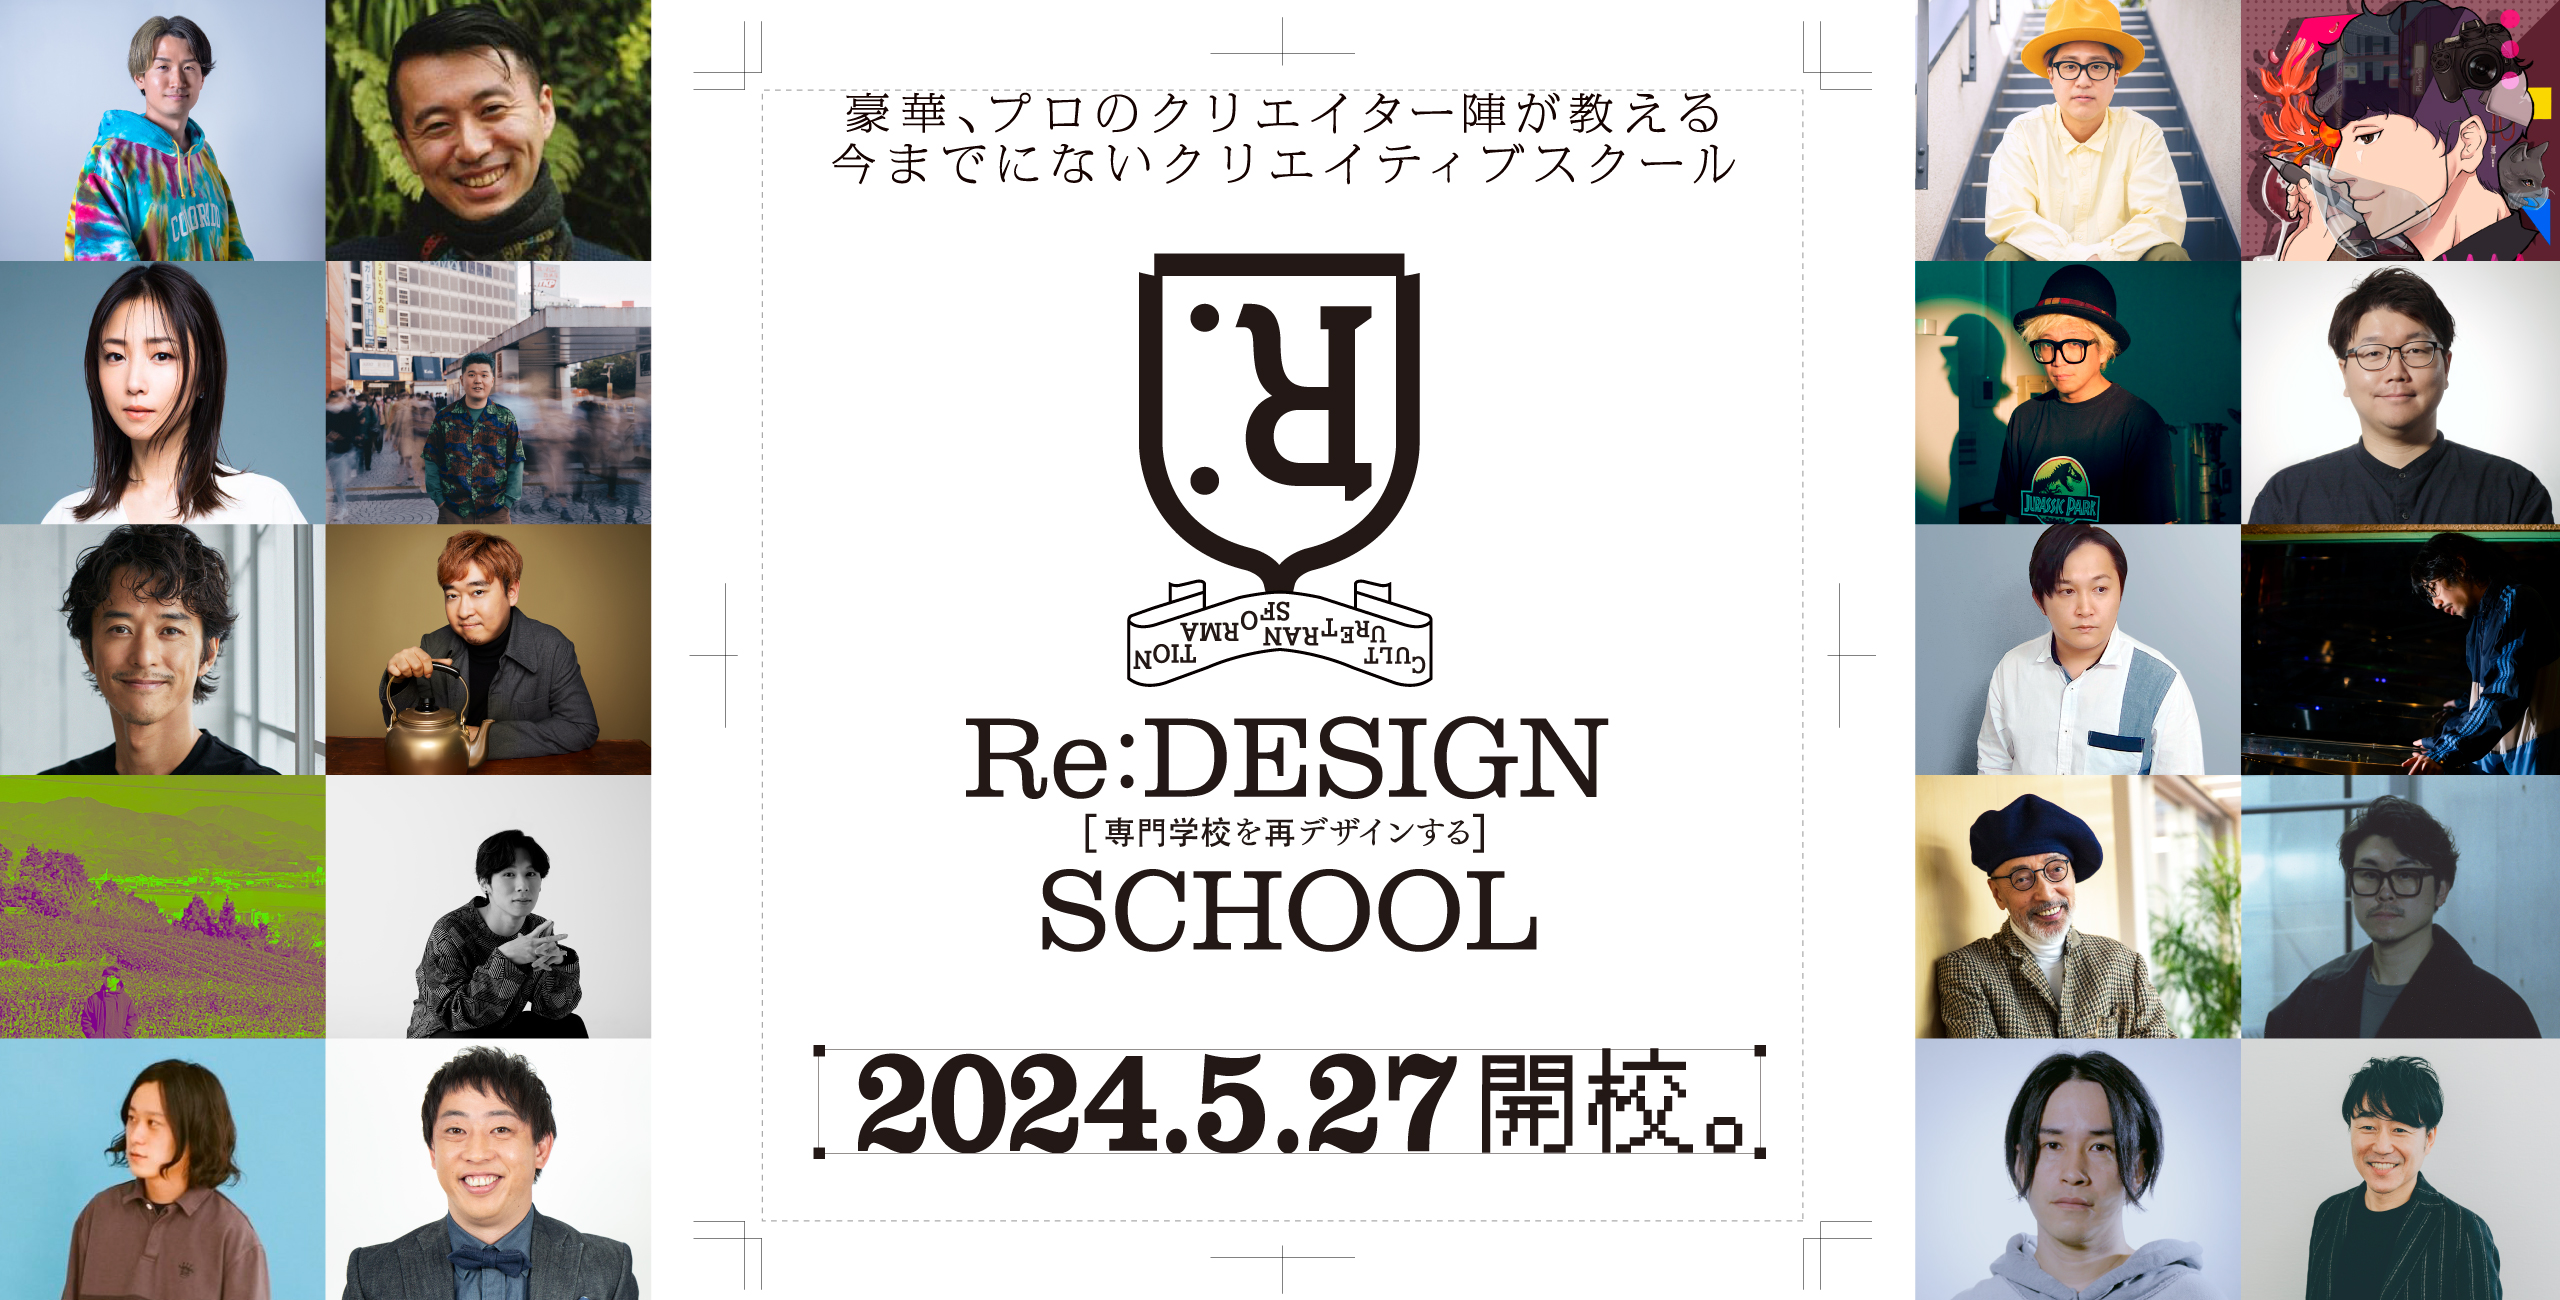 Re:design school1